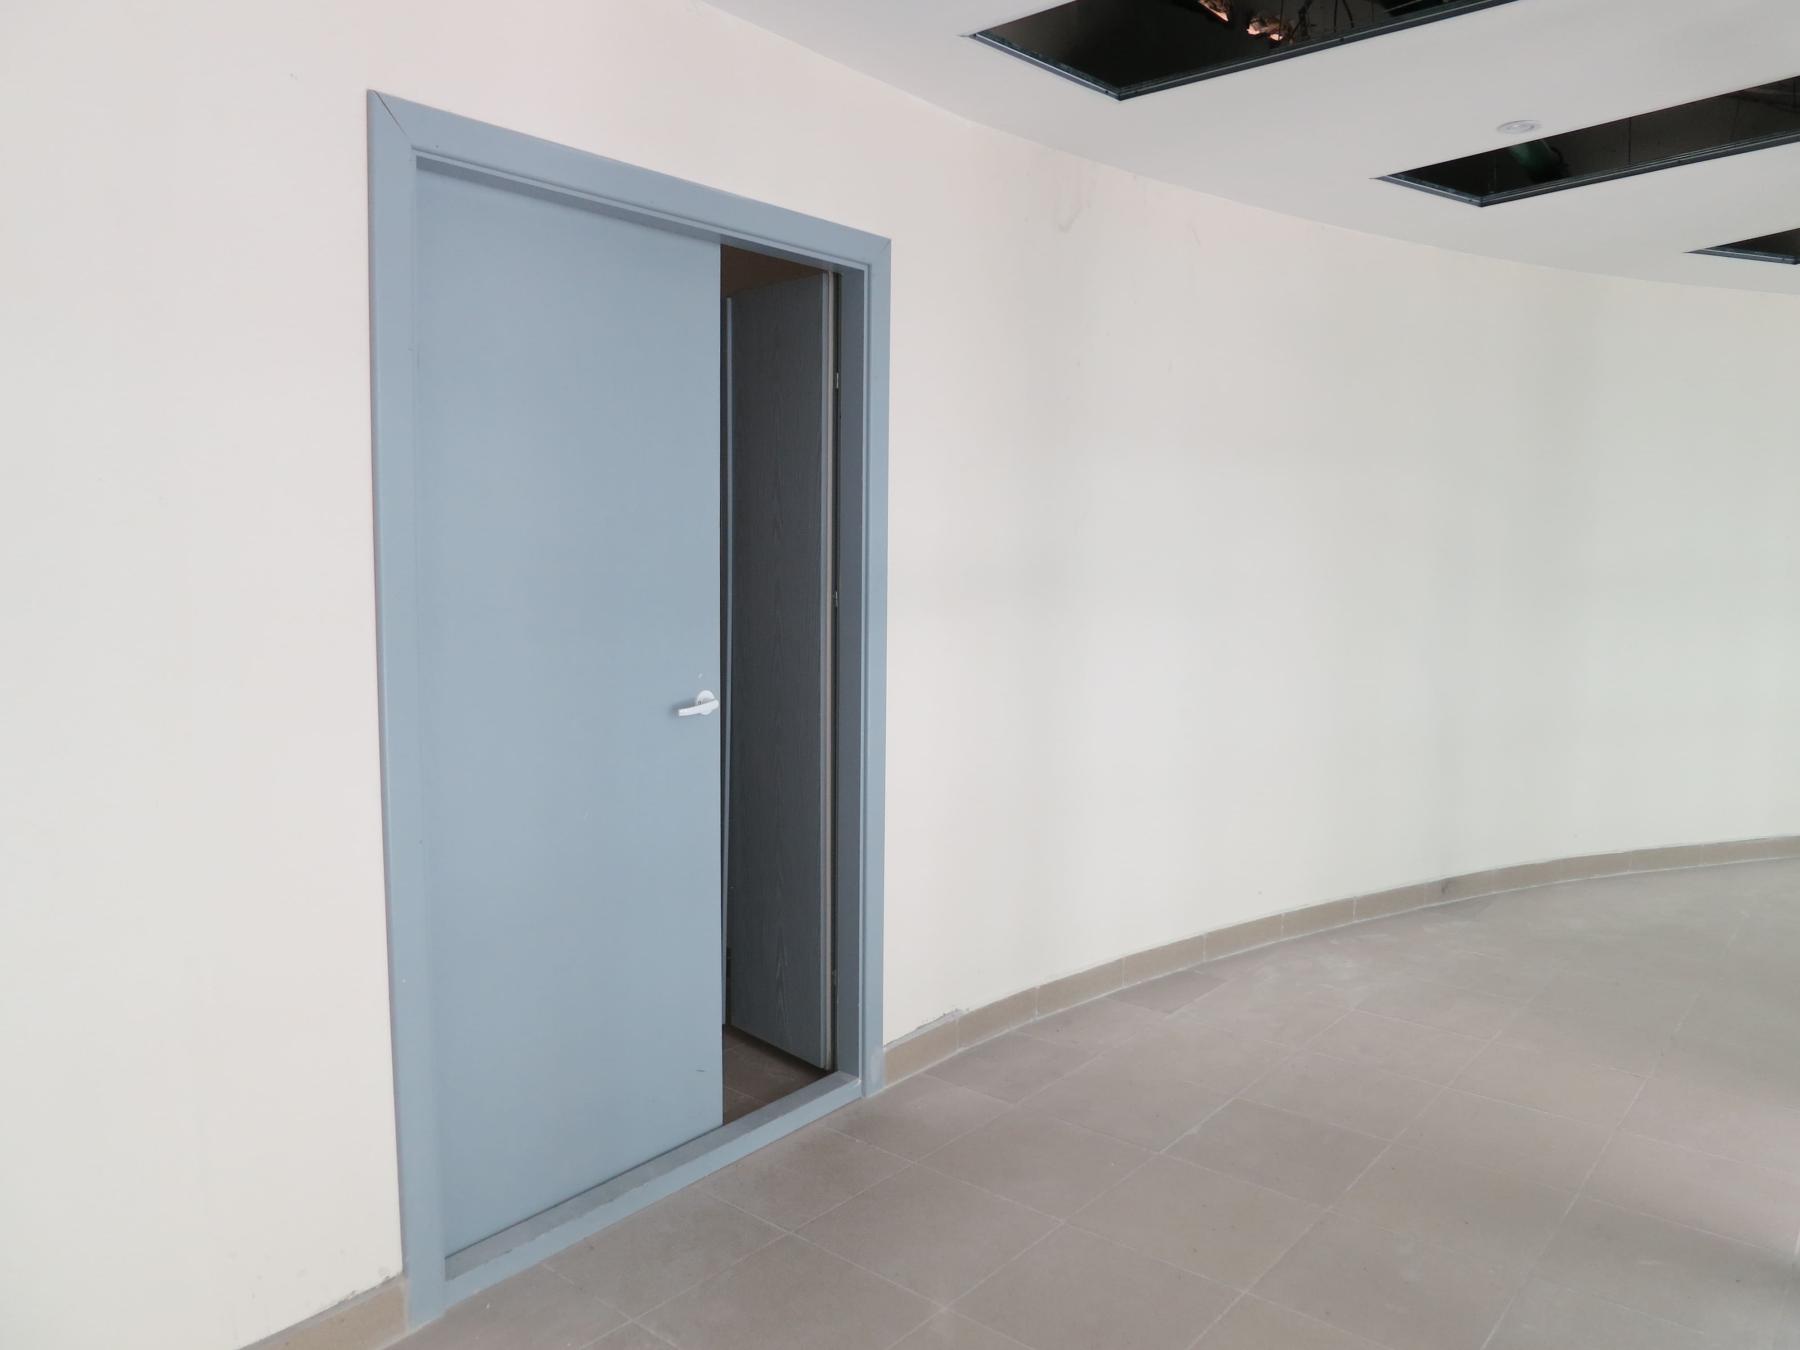 Полуторная распашная усиленная дверь Benefit, установленная в коридоре бизнес-центра